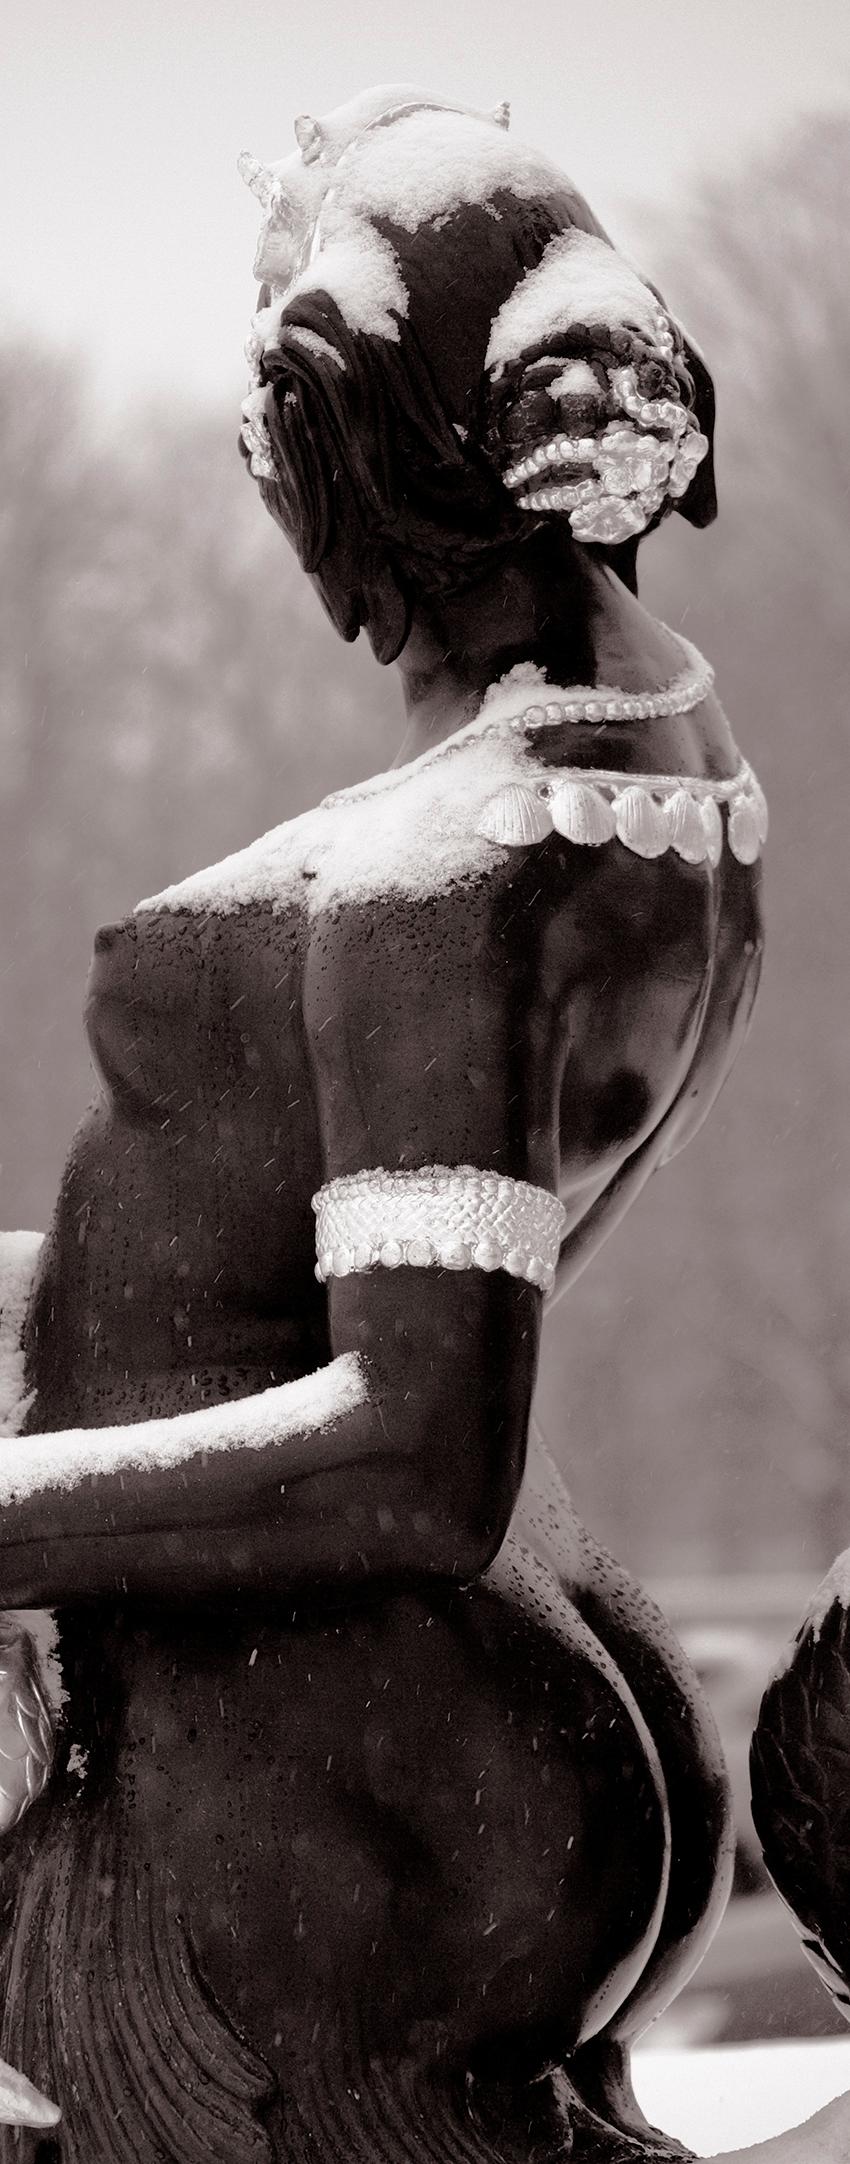 Die französische Herzogin - Pigmentdruck in limitierter Auflage  -   Limitierte Auflage von 5 Exemplaren
Skulptur einer nackten, mit Schnee bedeckten Frau in den Tuileriengärten in Paris, Frankreich, 2005
Jardins des Tuileries

Dies ist ein